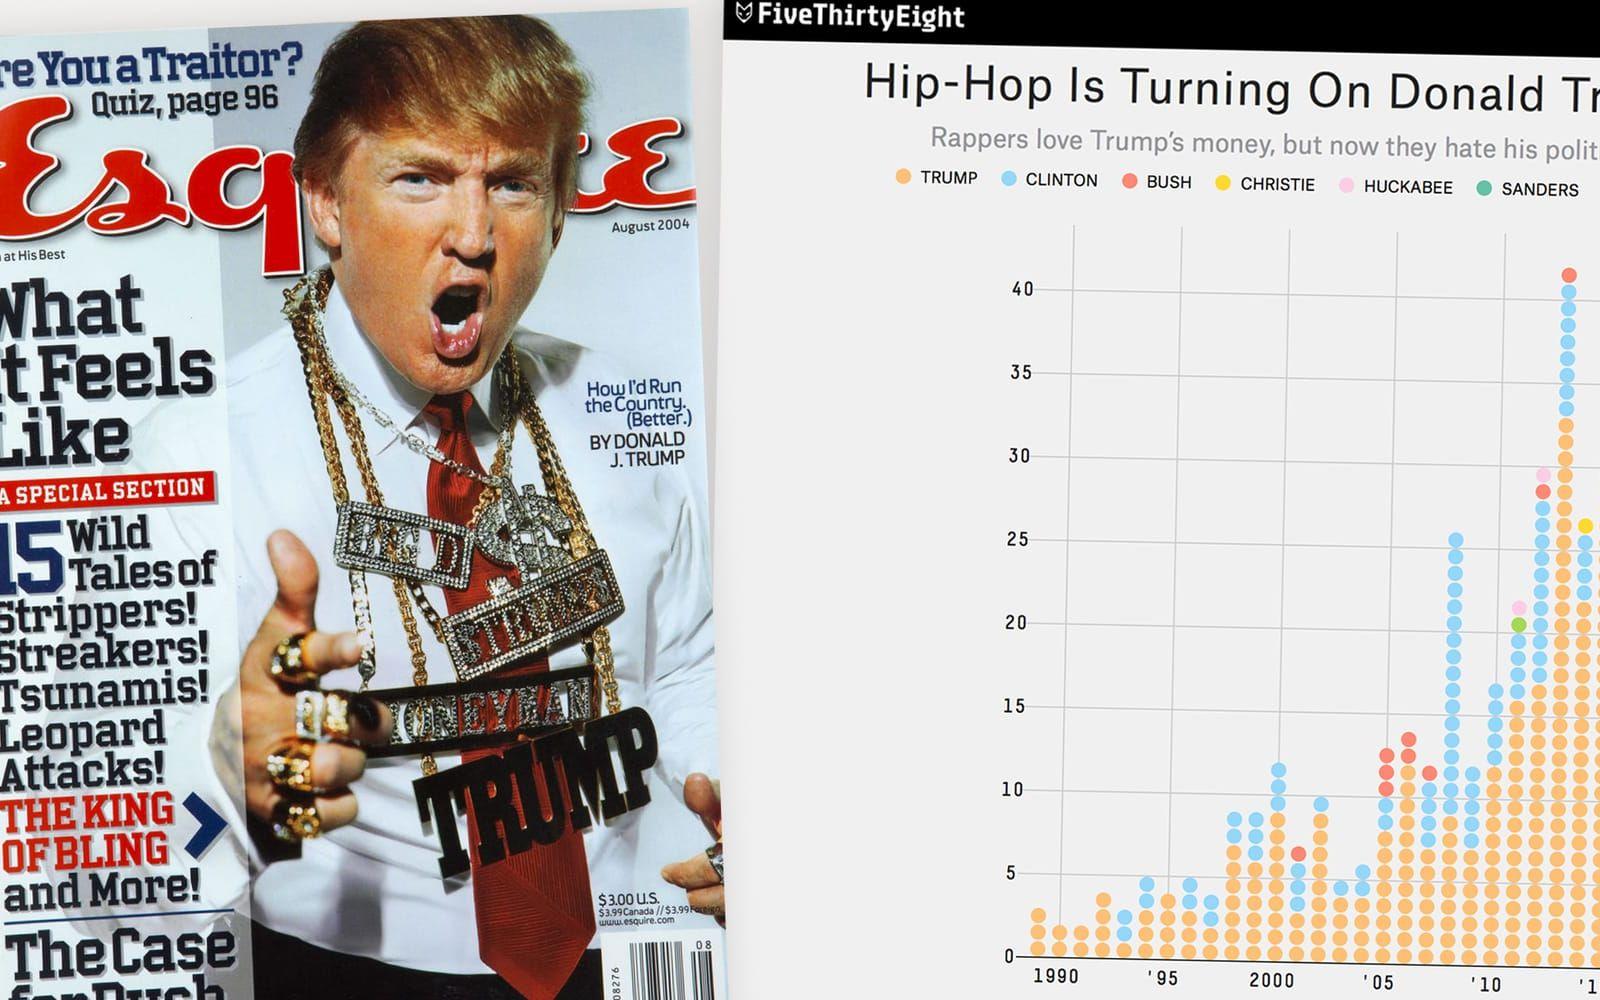 <strong>1994:</strong> Donald Trump har pengar, attityd och bling – inte konstigt att han blev populär att ”namedroppa” under 1990-talet. Första gången hans namn nämns är i Ice T:s låt My word is bond från 1989. Sedan dess har hans namn förekommit 266 gånger enligt sajten Genius.com som FiveThirtyeight tagit del av. Bland annat av Nas, Kendrick Lamar, 50 Cent och många fler. Det kan jämföras med paret Clinton som nämnts 93 gånger sedan 1993.